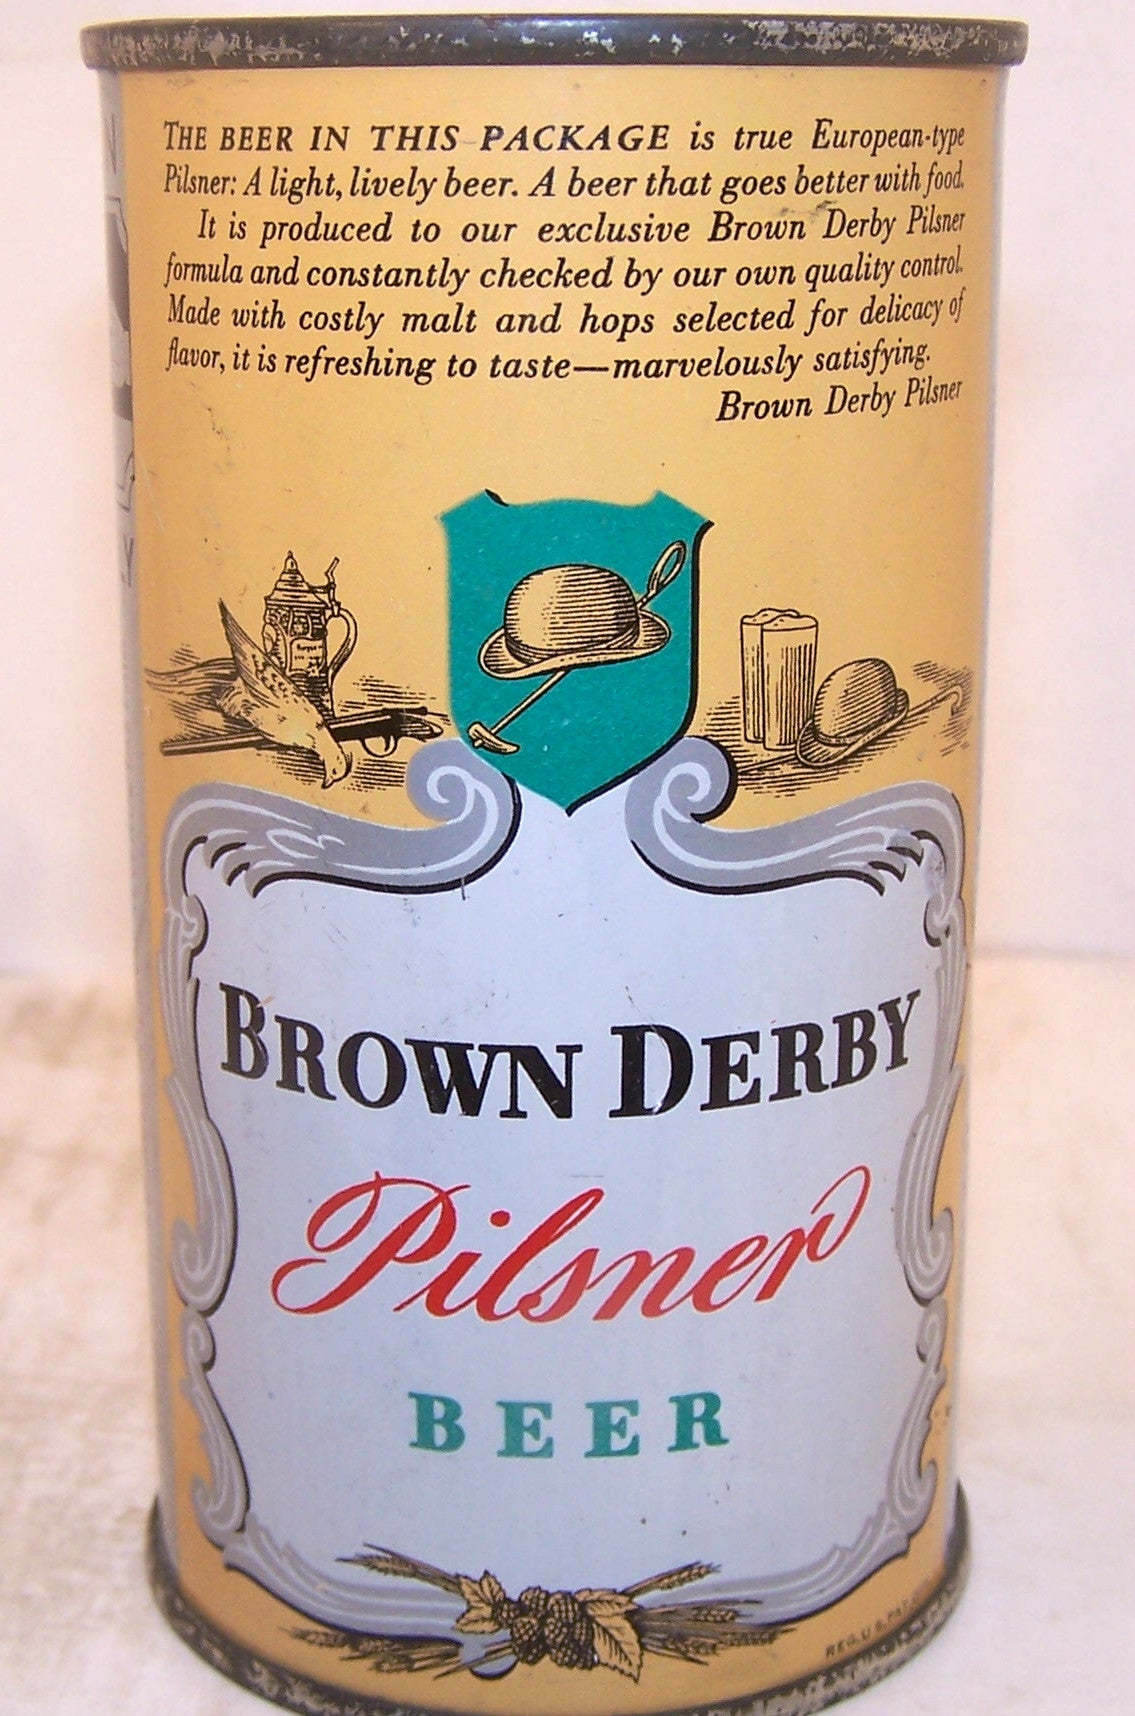 Brown Derby Pilsner Beer, Lilek page # 136, Grade 1 Sold 2/27/15